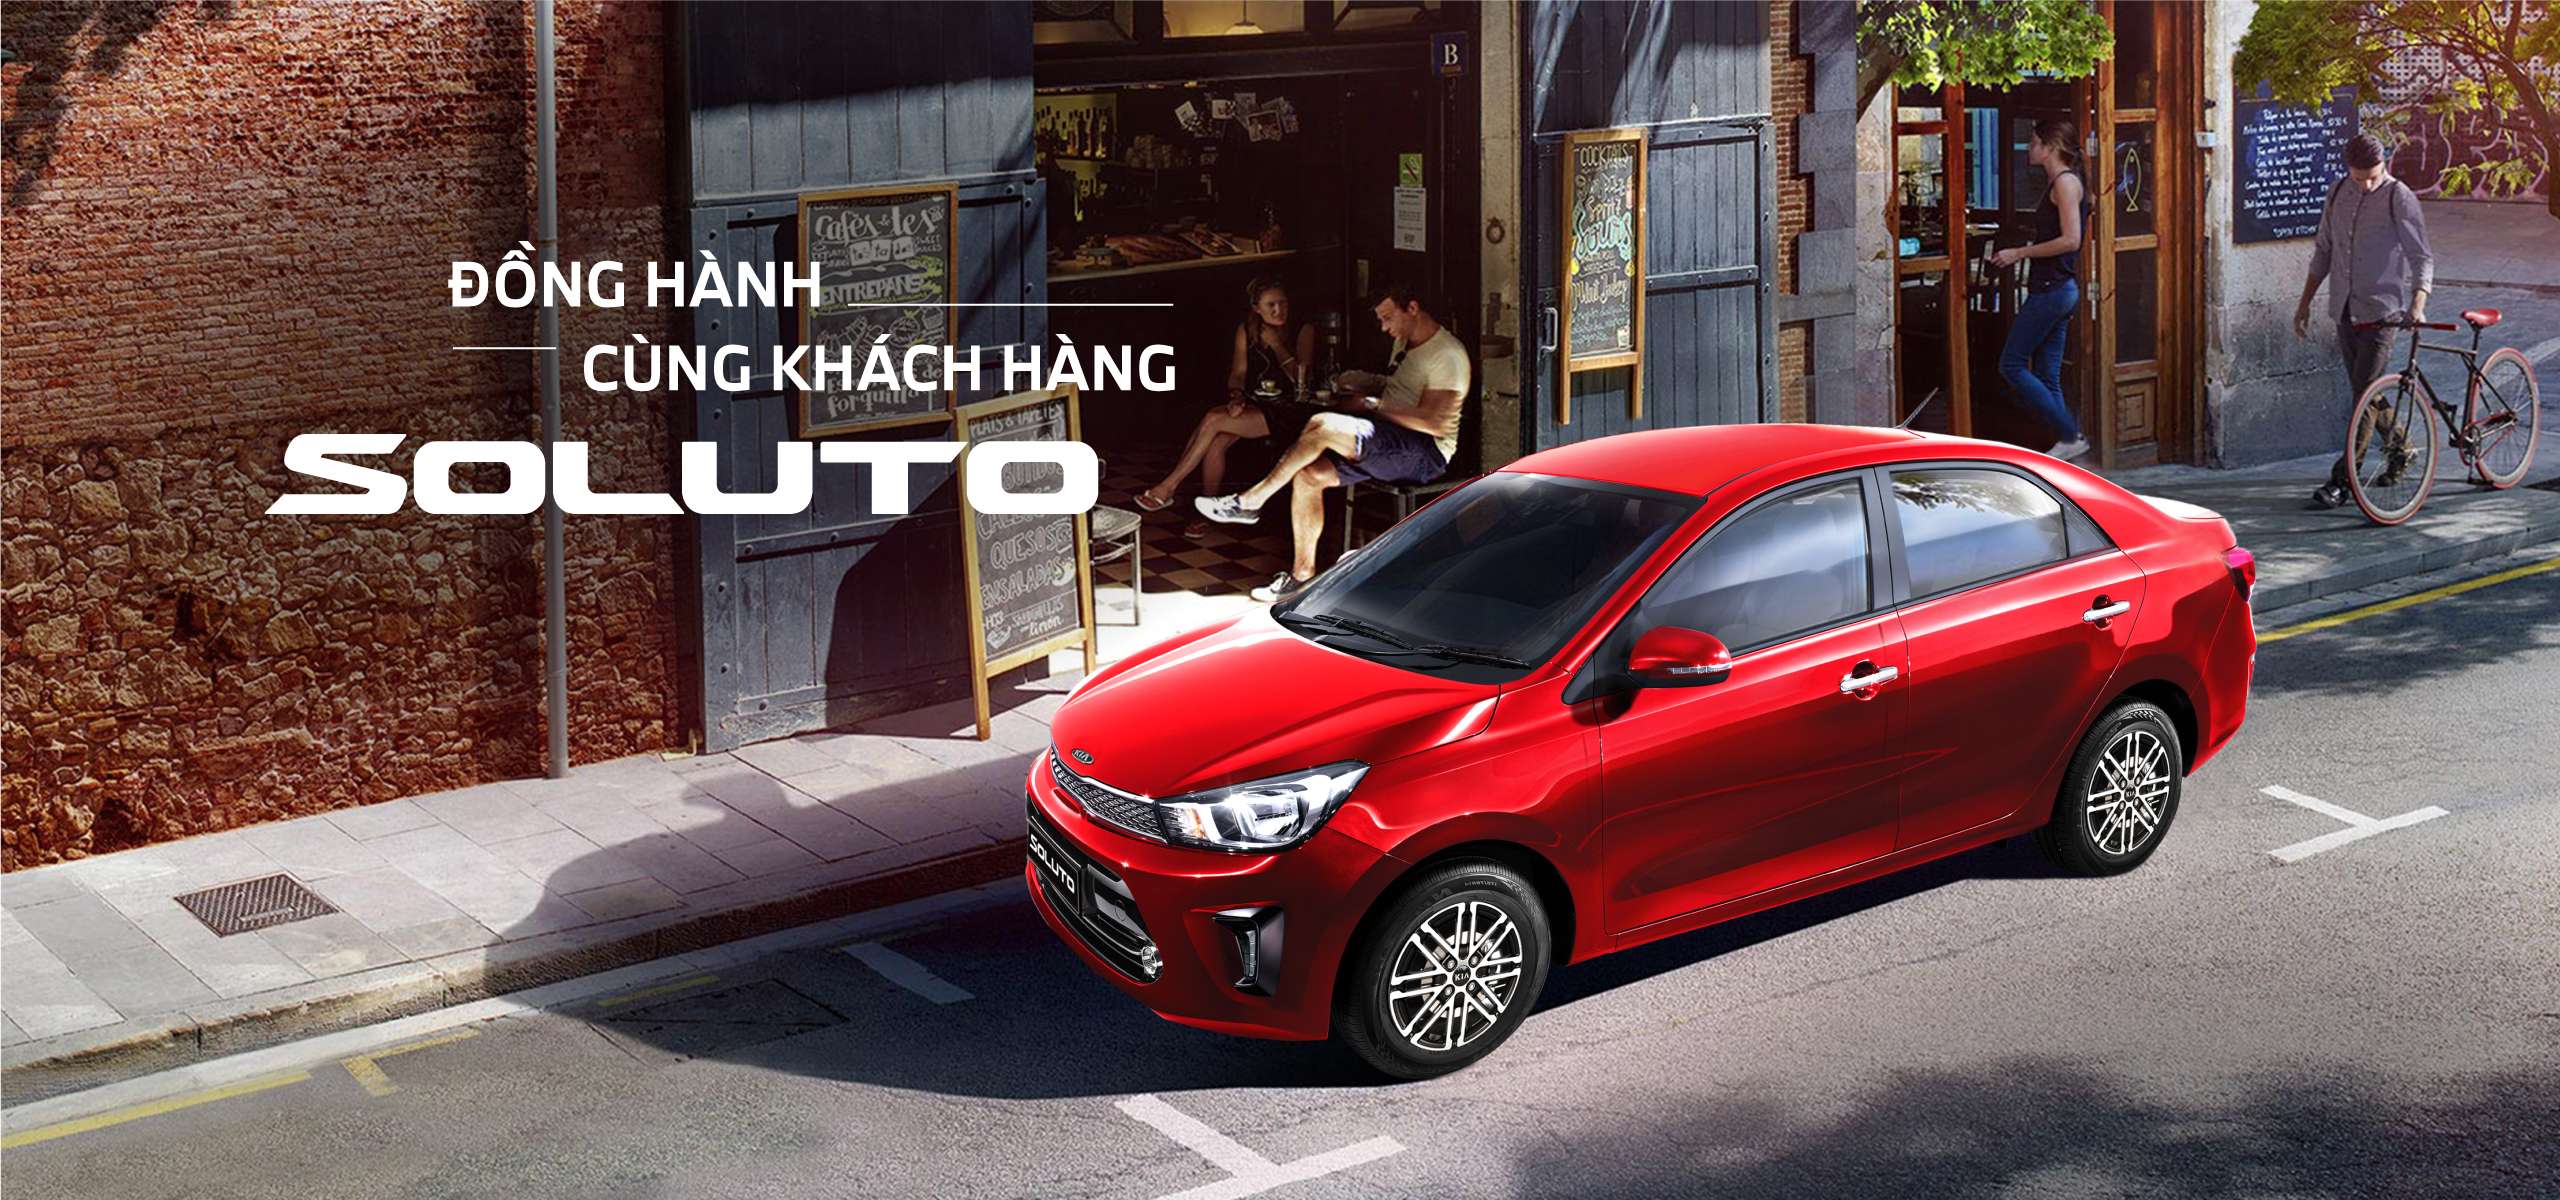 KIA Hưng Yên Auto  Đại lý chính thức Kia Mazda tại Hưng Yên